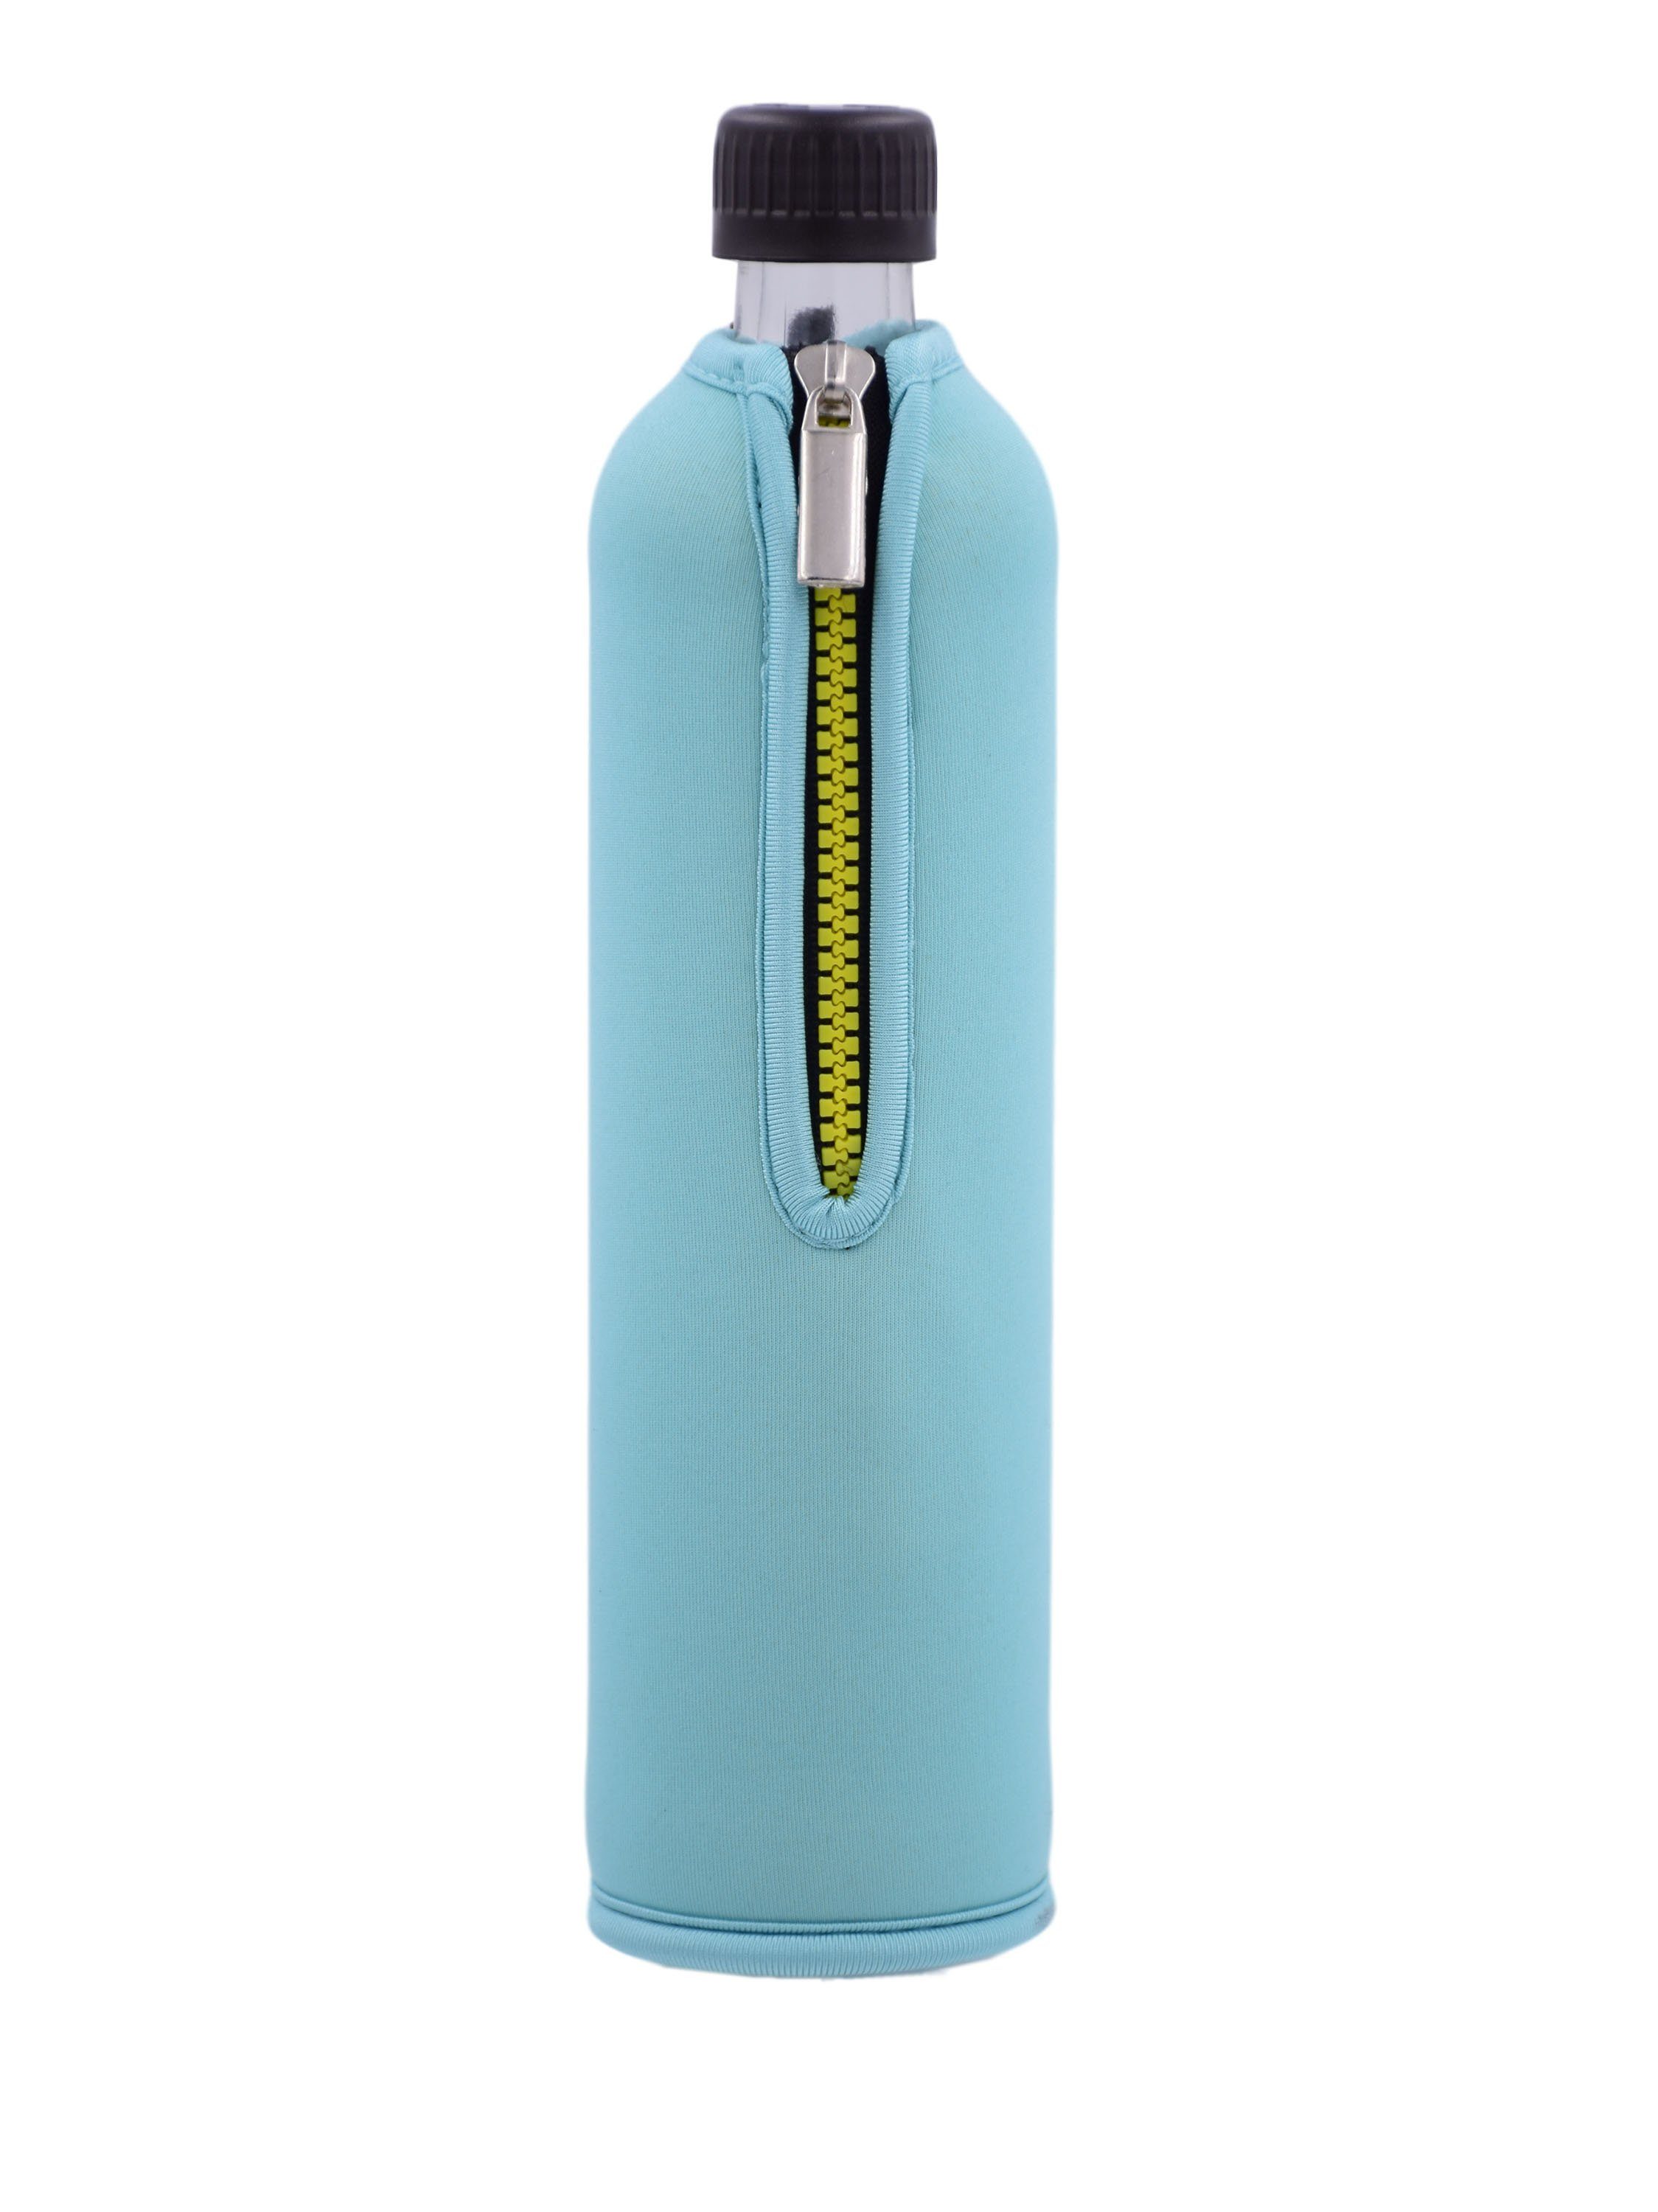 Dora's Trinkflasche Glasflasche mit Neoprenbezug türkis 500 ml, 500 ml